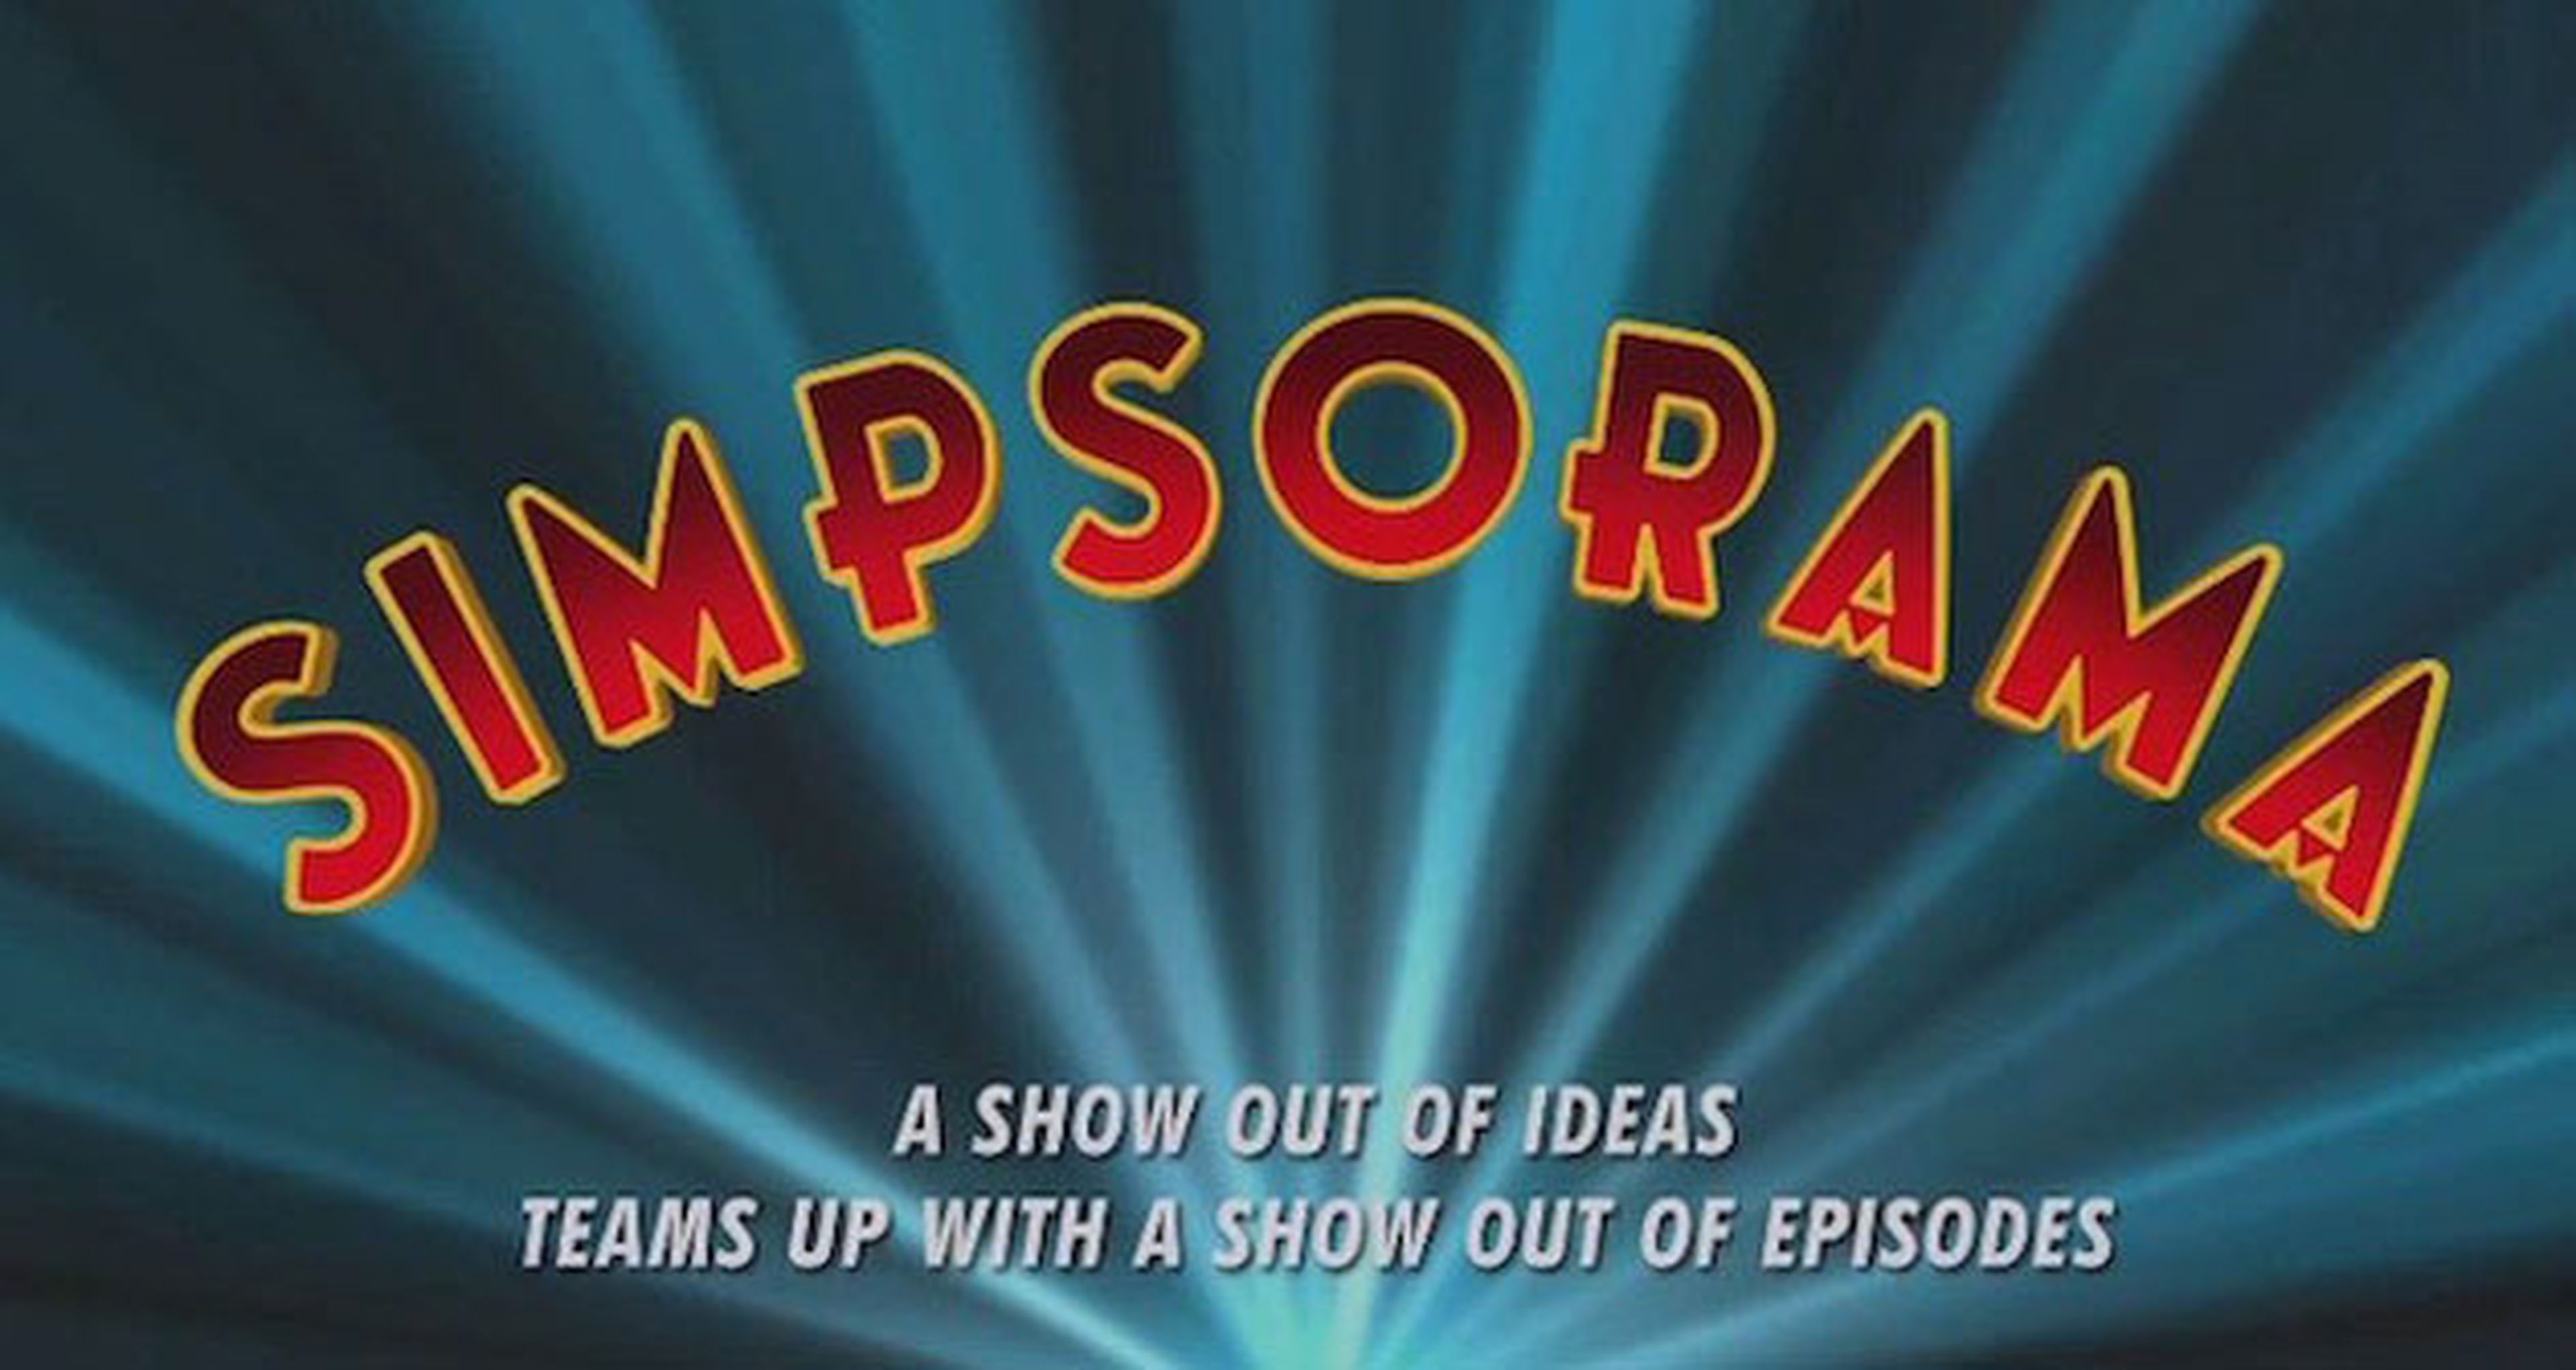 Así es la cabecera de Simpsorama, el crossover de Simpsons y Futurama